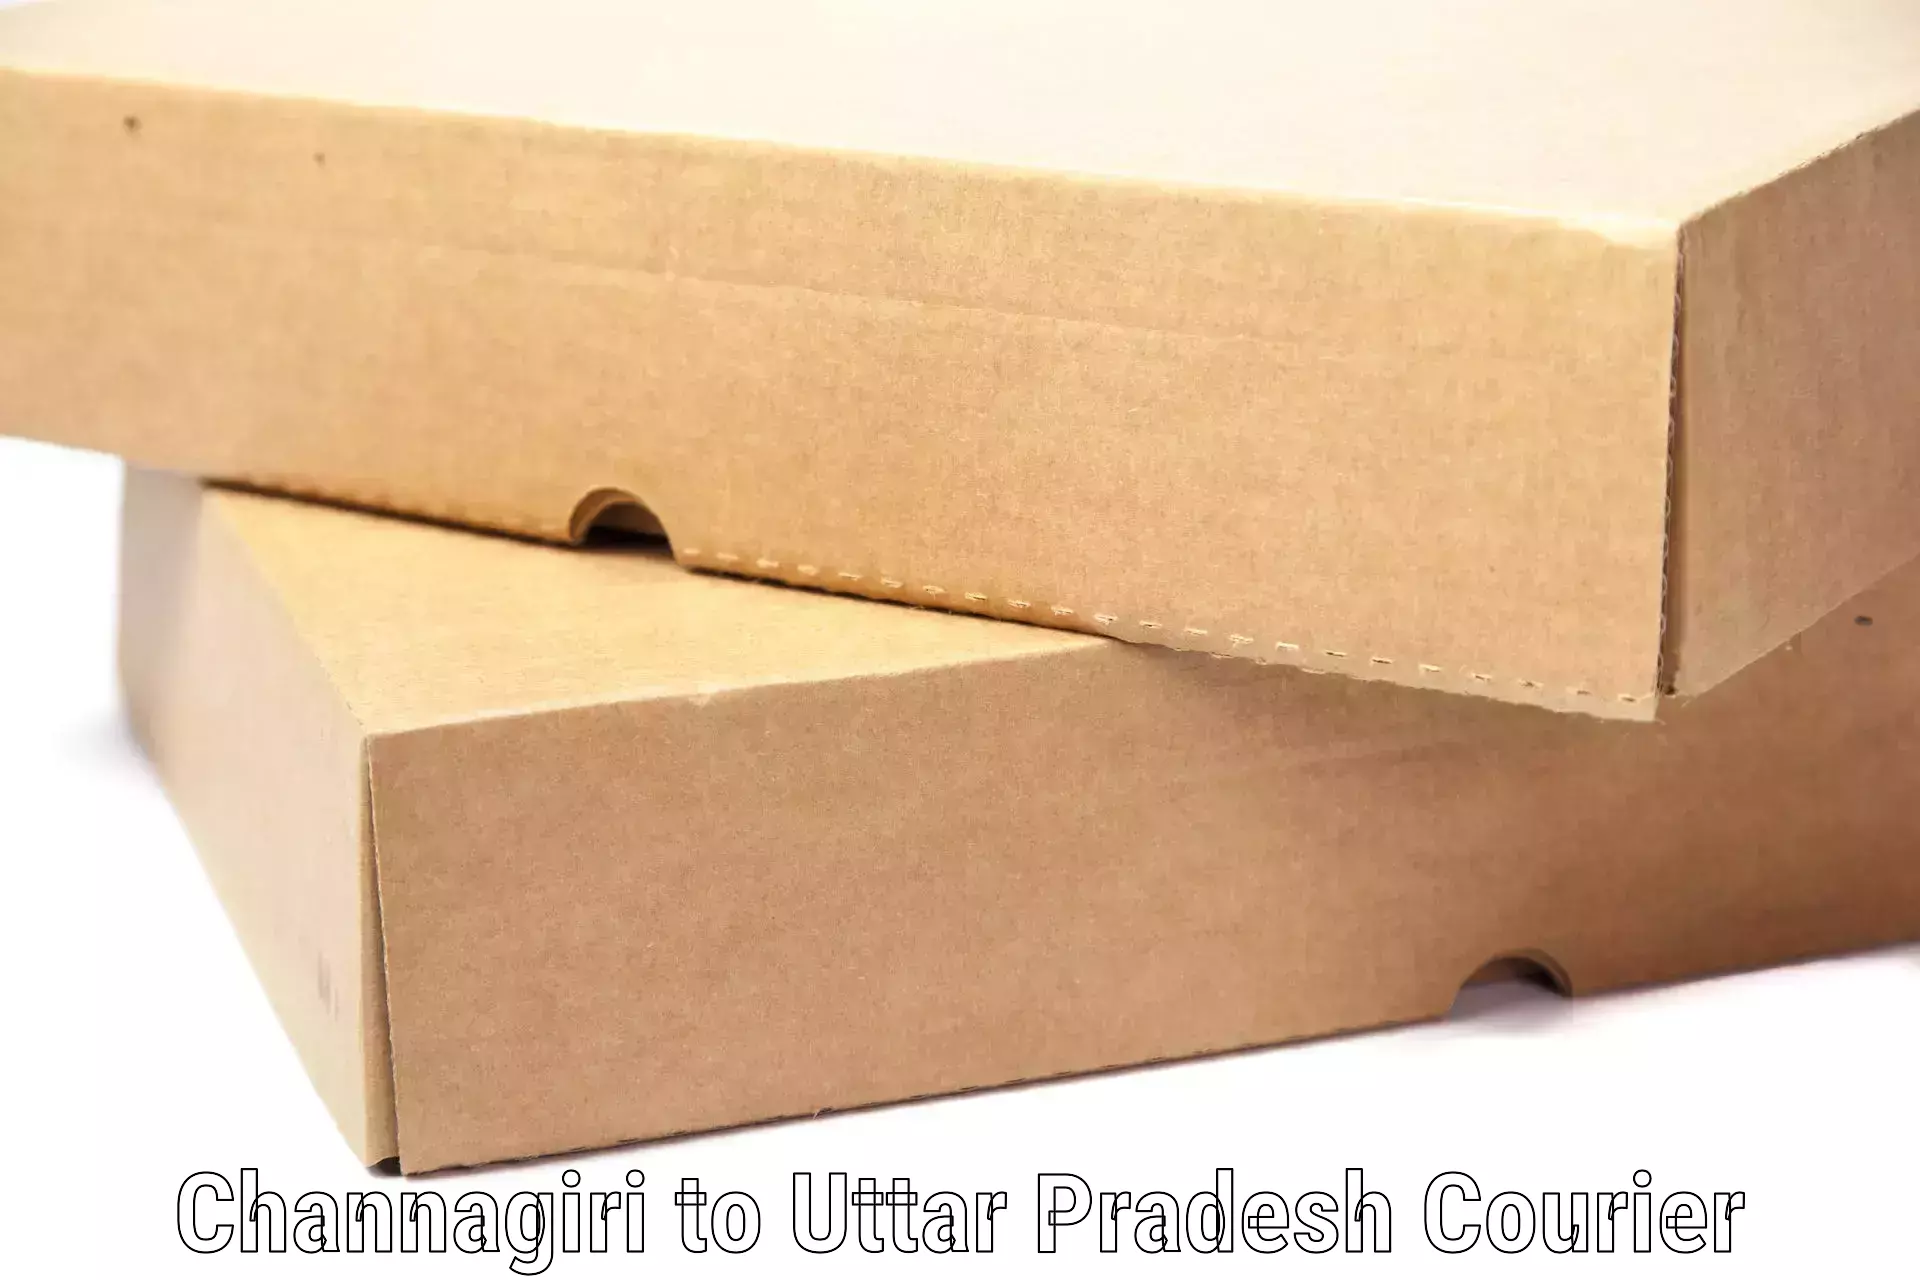 Luggage shipping guide in Channagiri to Uttar Pradesh